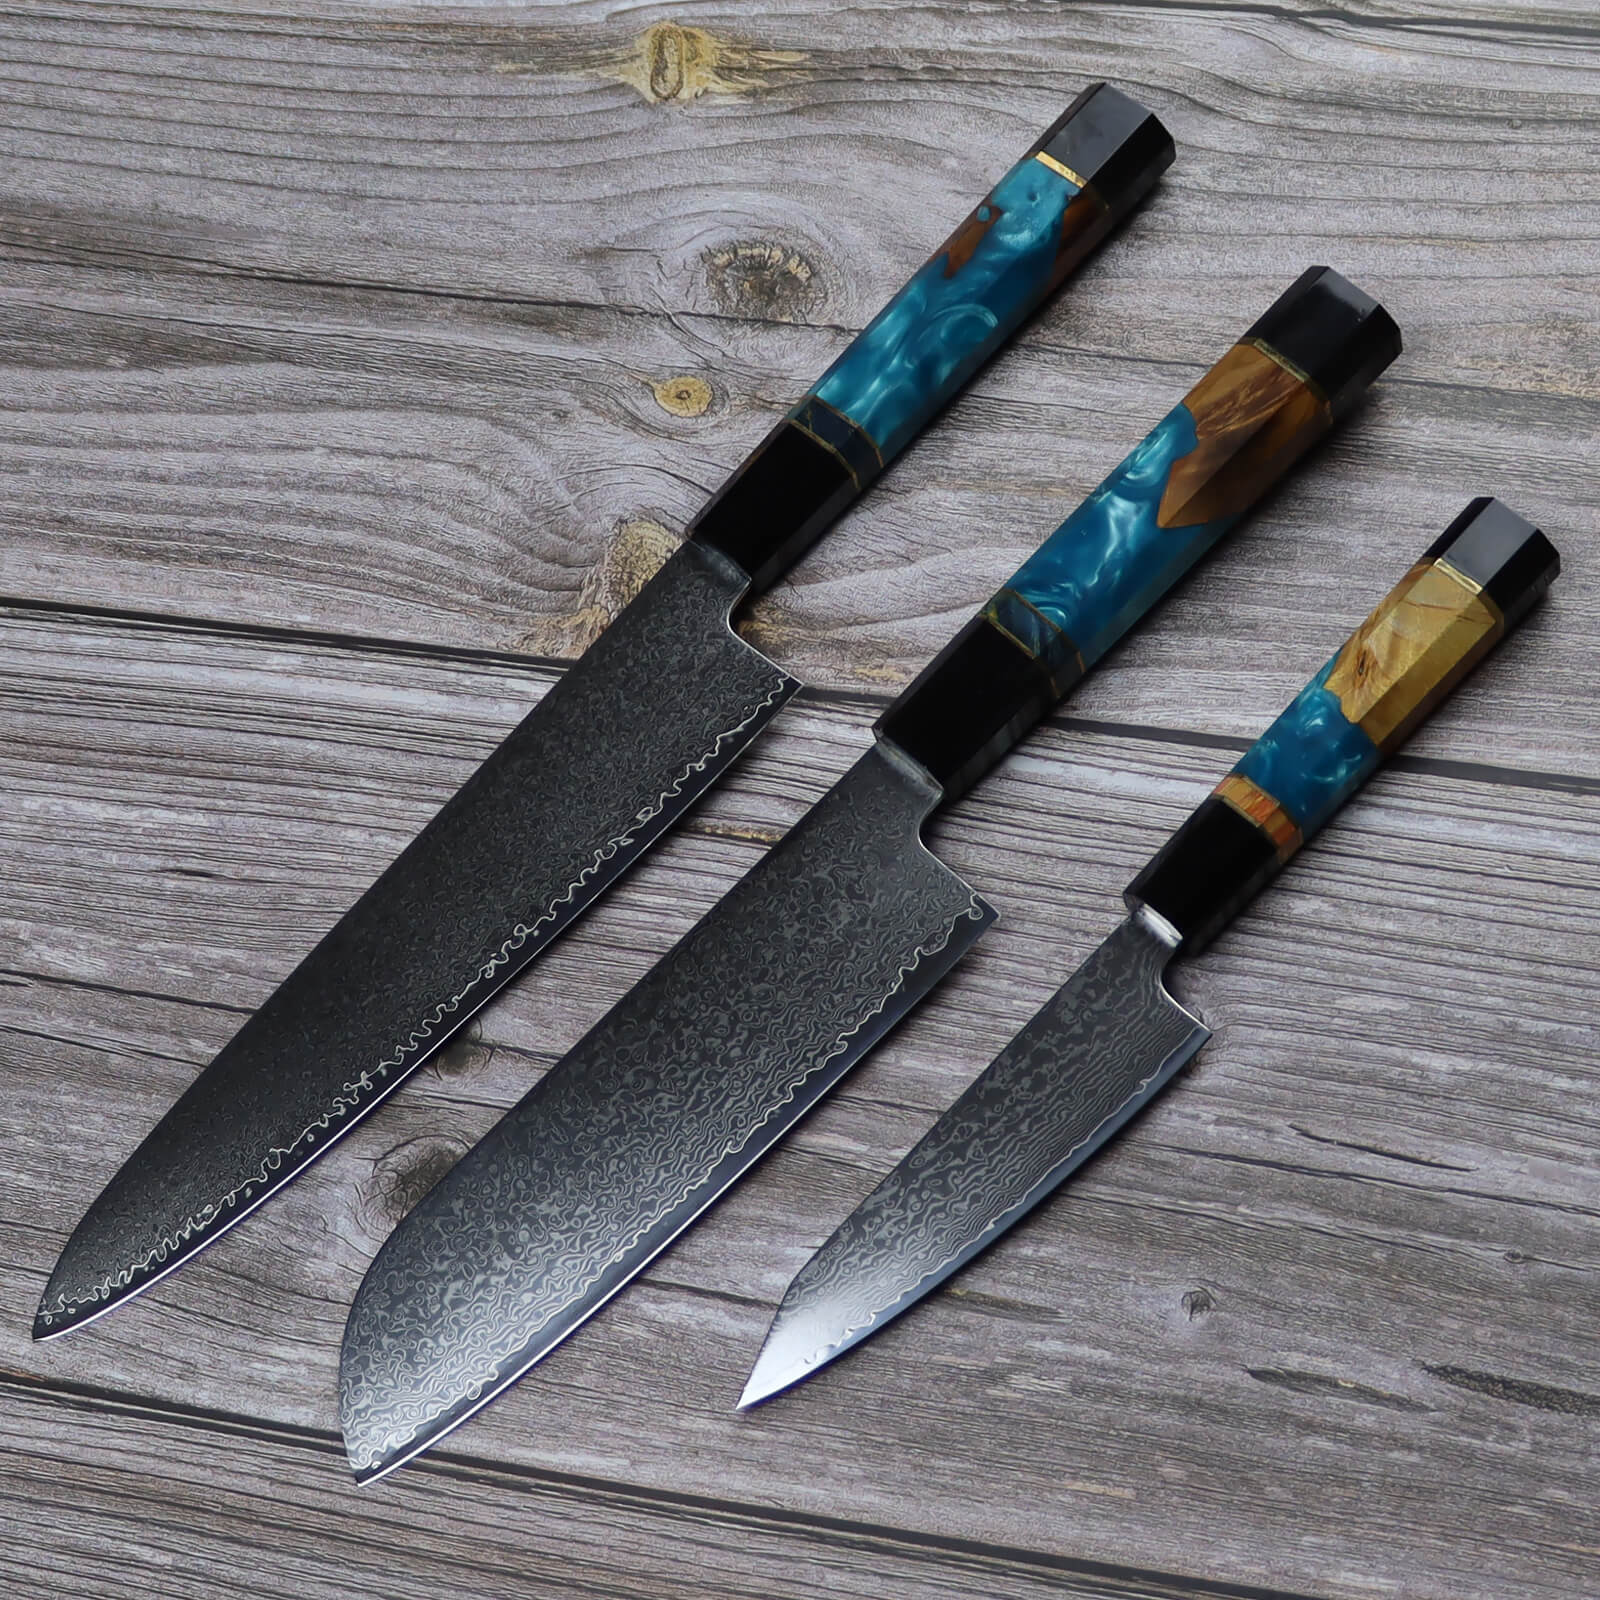 Fzkaly Japanese Damascus Knife Set